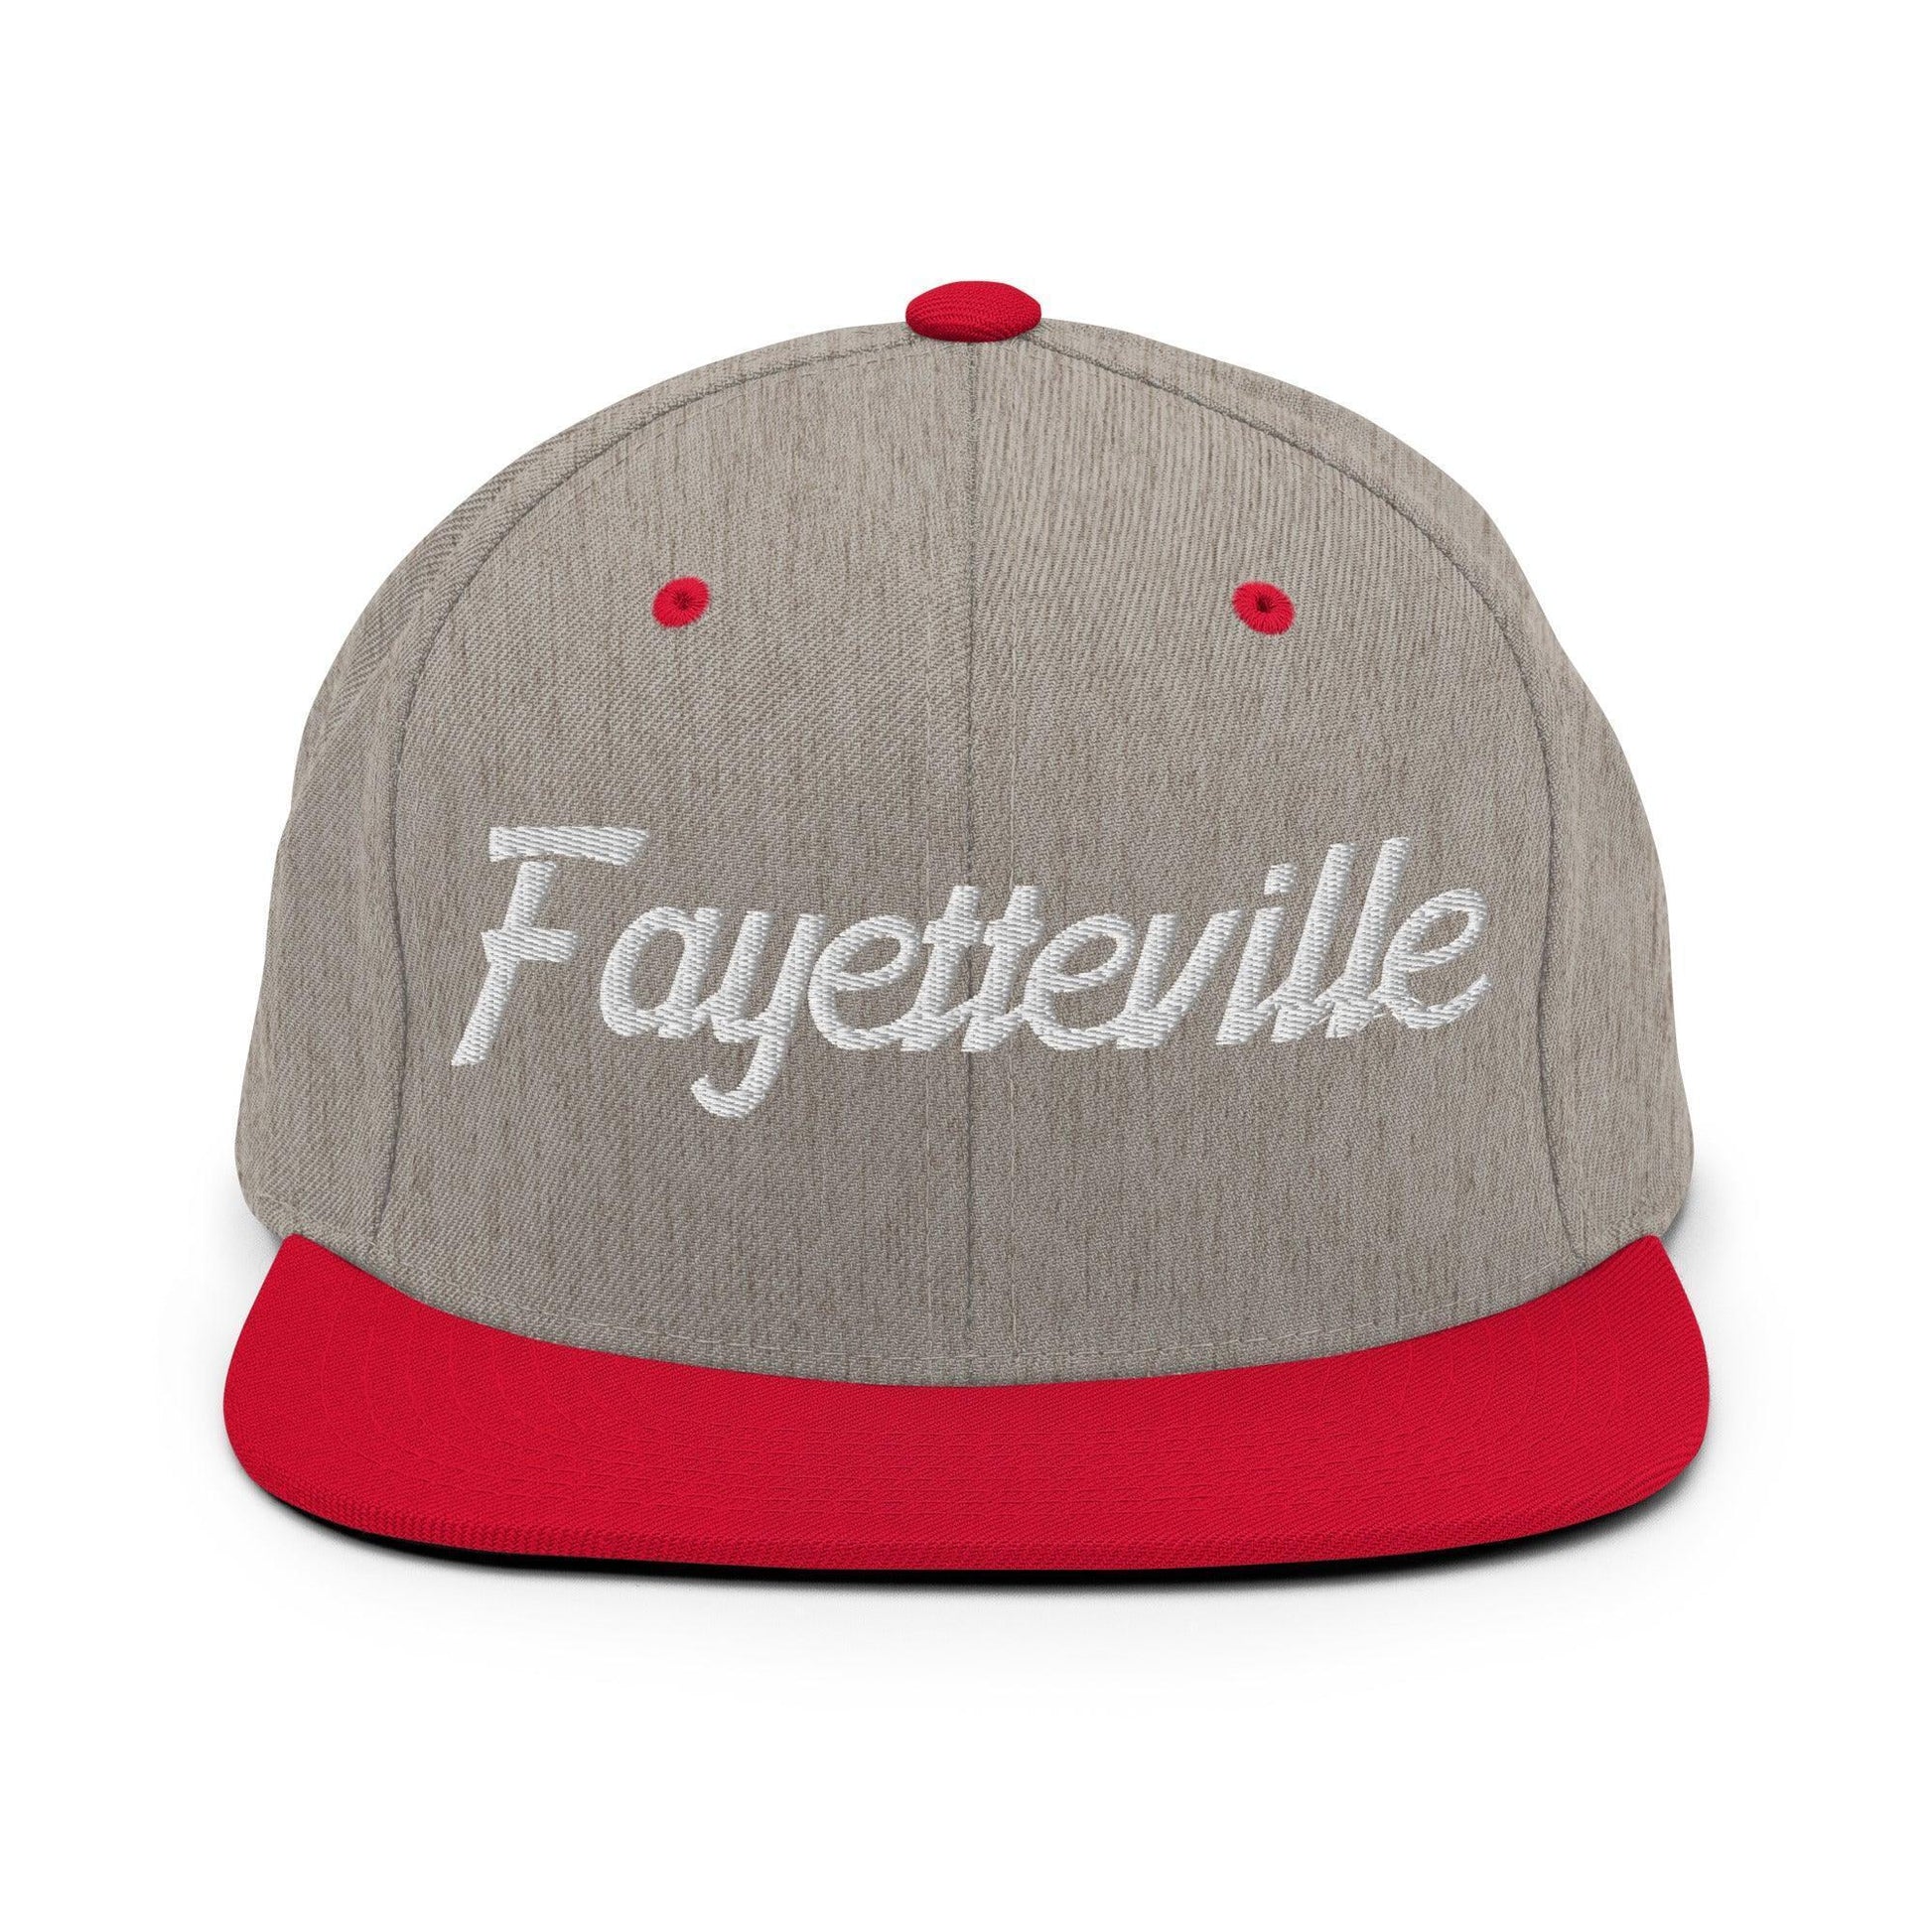 Fayetteville Script Snapback Hat Heather Grey/ Red